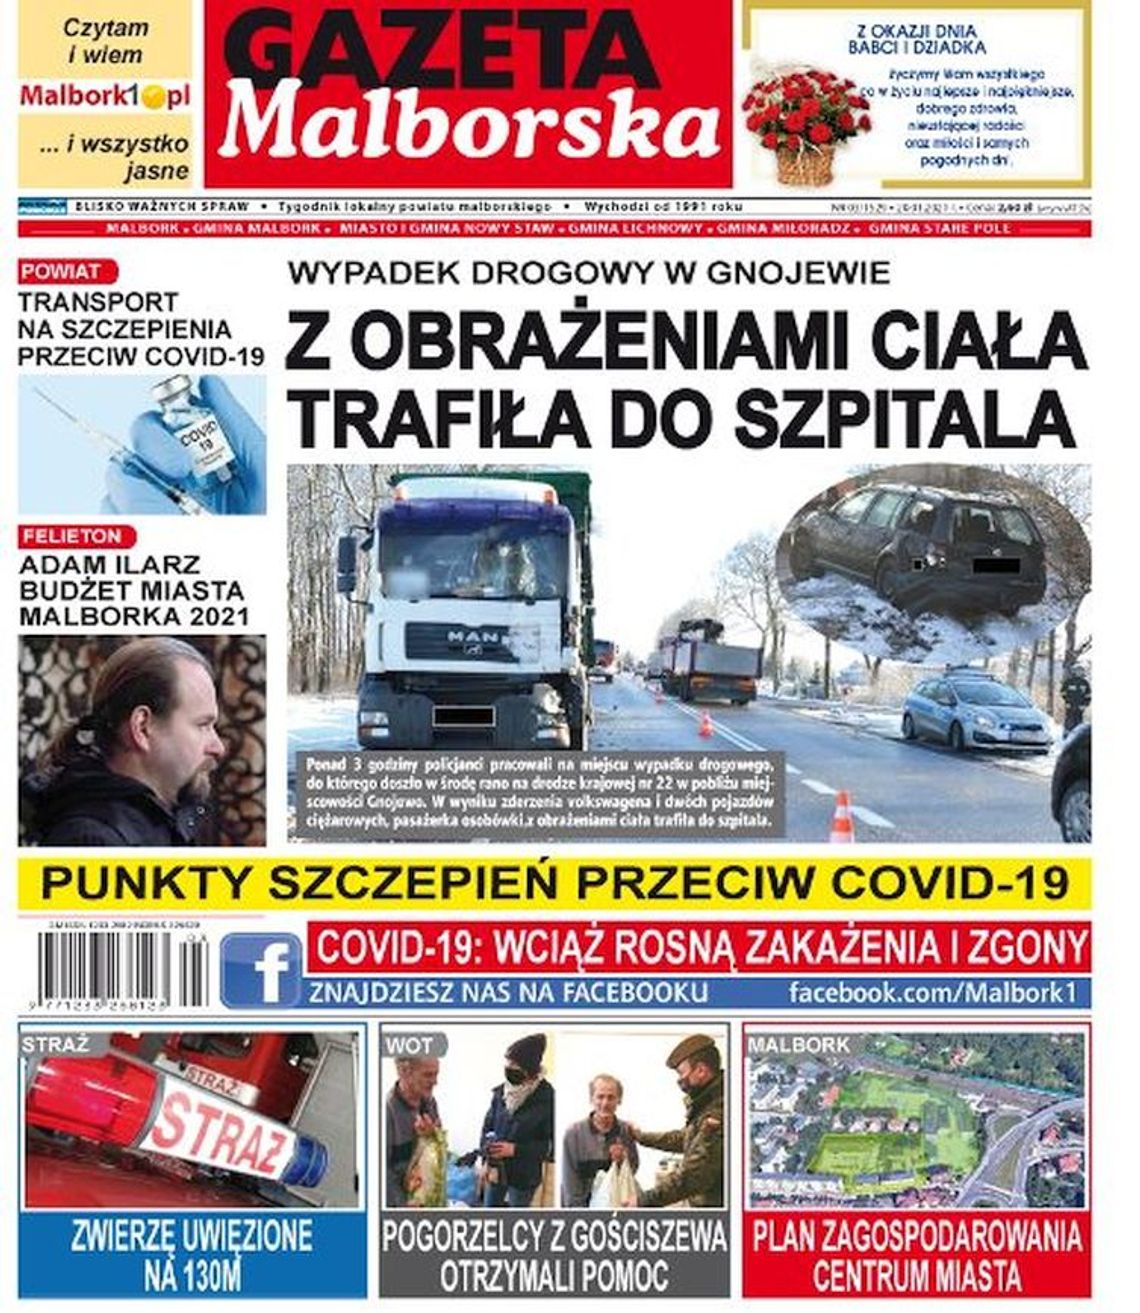 Najnowszy numer Gazety Malborskiej już dziś w Twoim kiosku. Świeże informacje z Malborka i okolic naszego powiatu w sprzedaży. Co w środku?